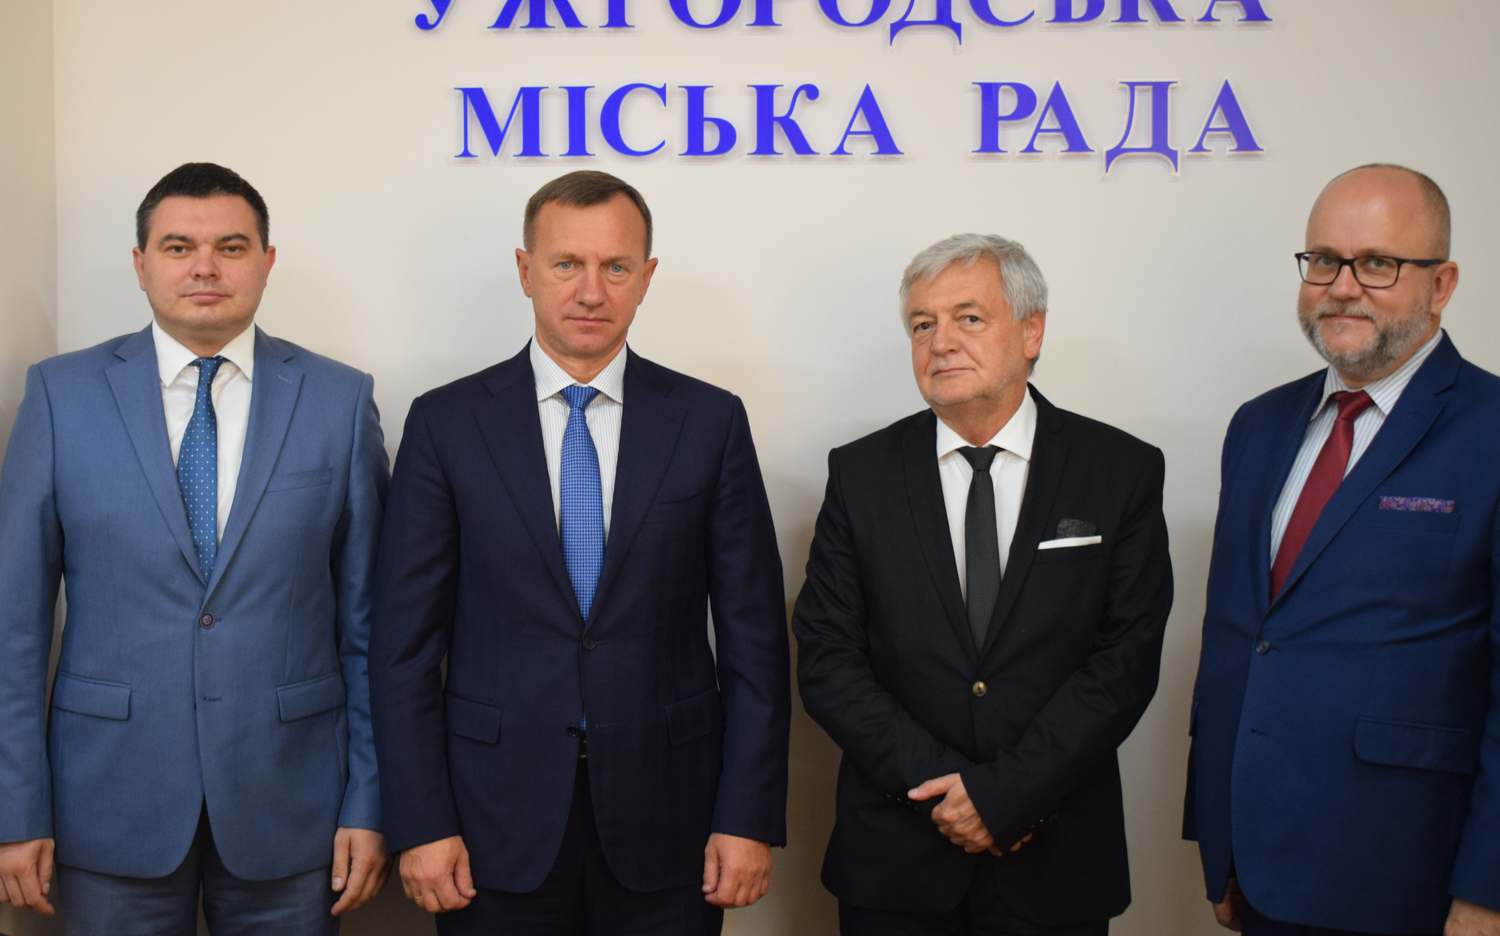 Ужгородський міський голова Богдан Андріїв зустрівся з провідними польськими дипломатами, які працюють в Україні